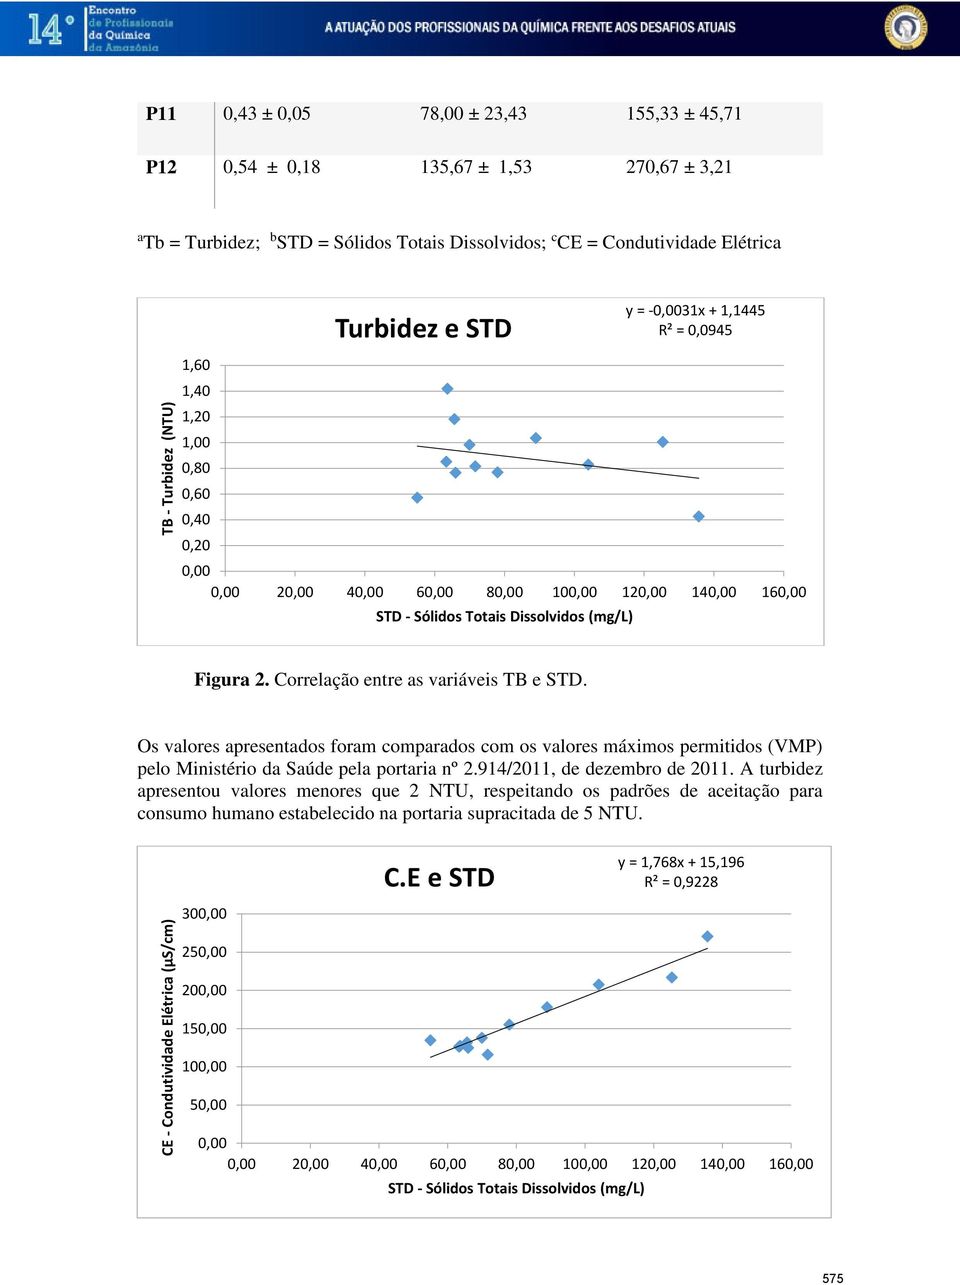 Correlação entre as variáveis TB e STD. Os valores apresentados foram comparados com os valores máximos permitidos (VMP) pelo Ministério da Saúde pela portaria nº 2.914/2011, de dezembro de 2011.